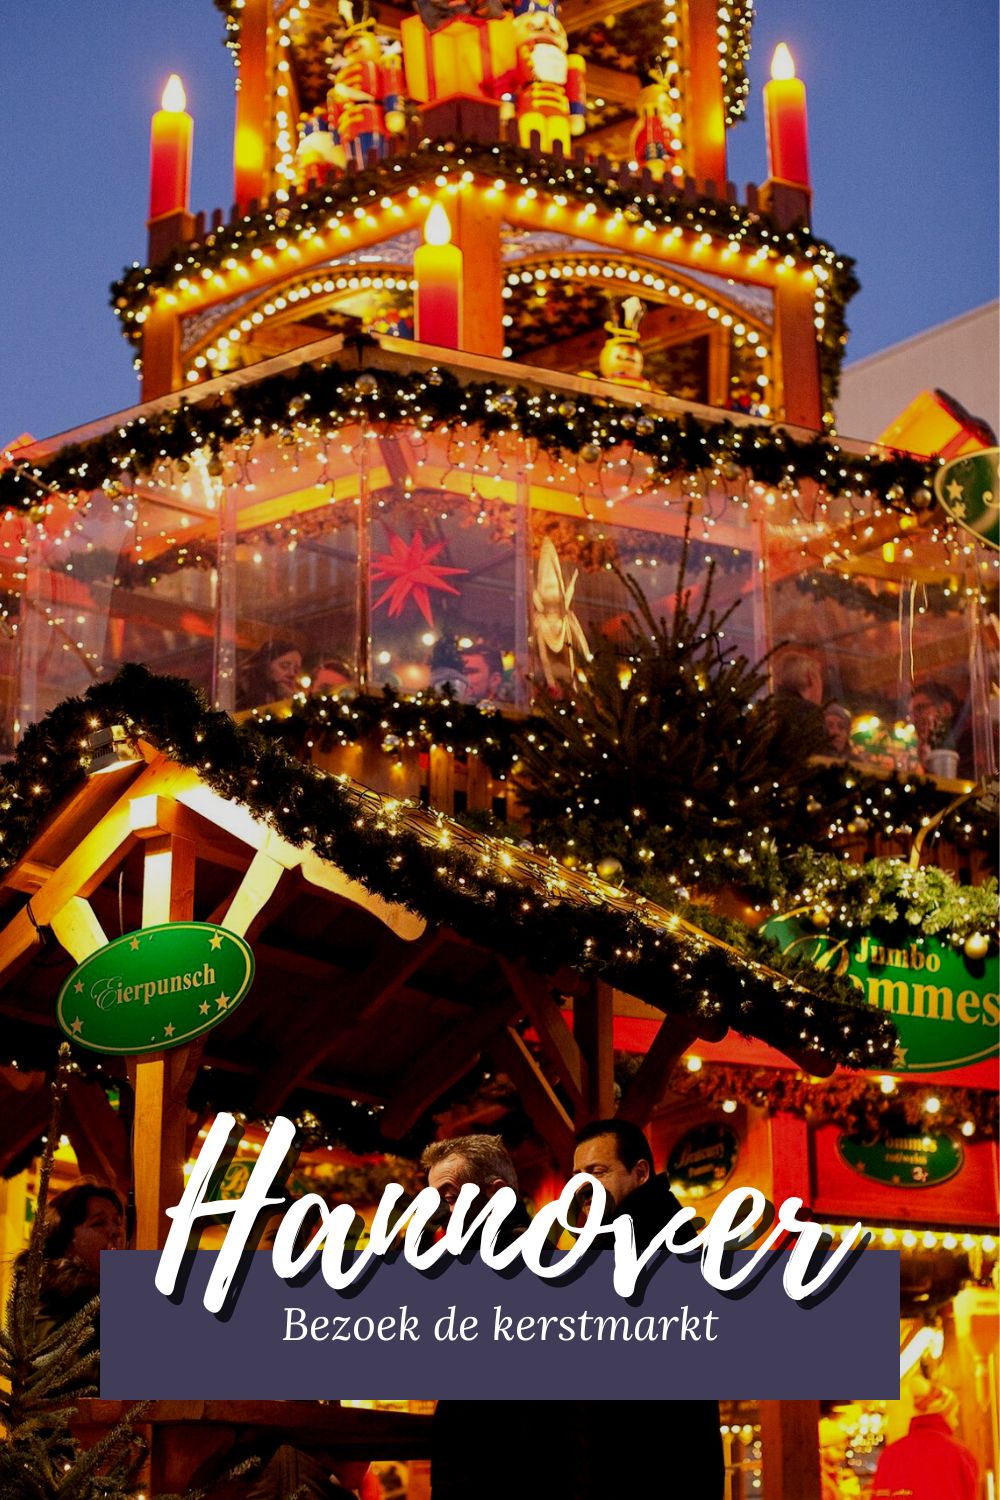 Kerstmarkt Hannover: de leukste tips voor een bezoek aan de kerstmarkt in Hannover, Duitsland | Mooistestedentrips.nl